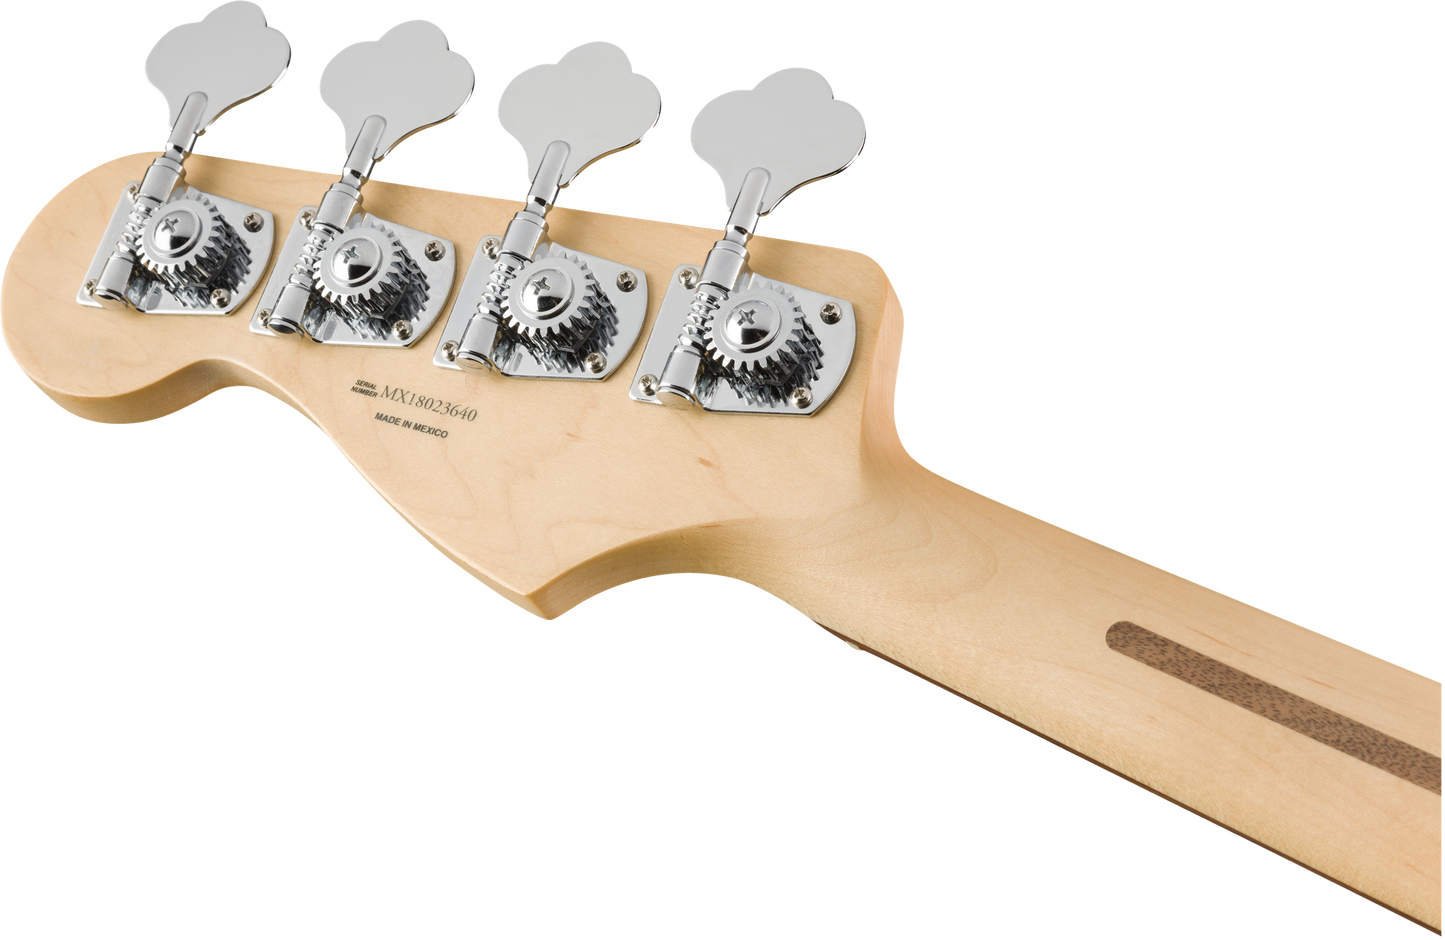 Fender Player Series Jazz Bass - Sunburst